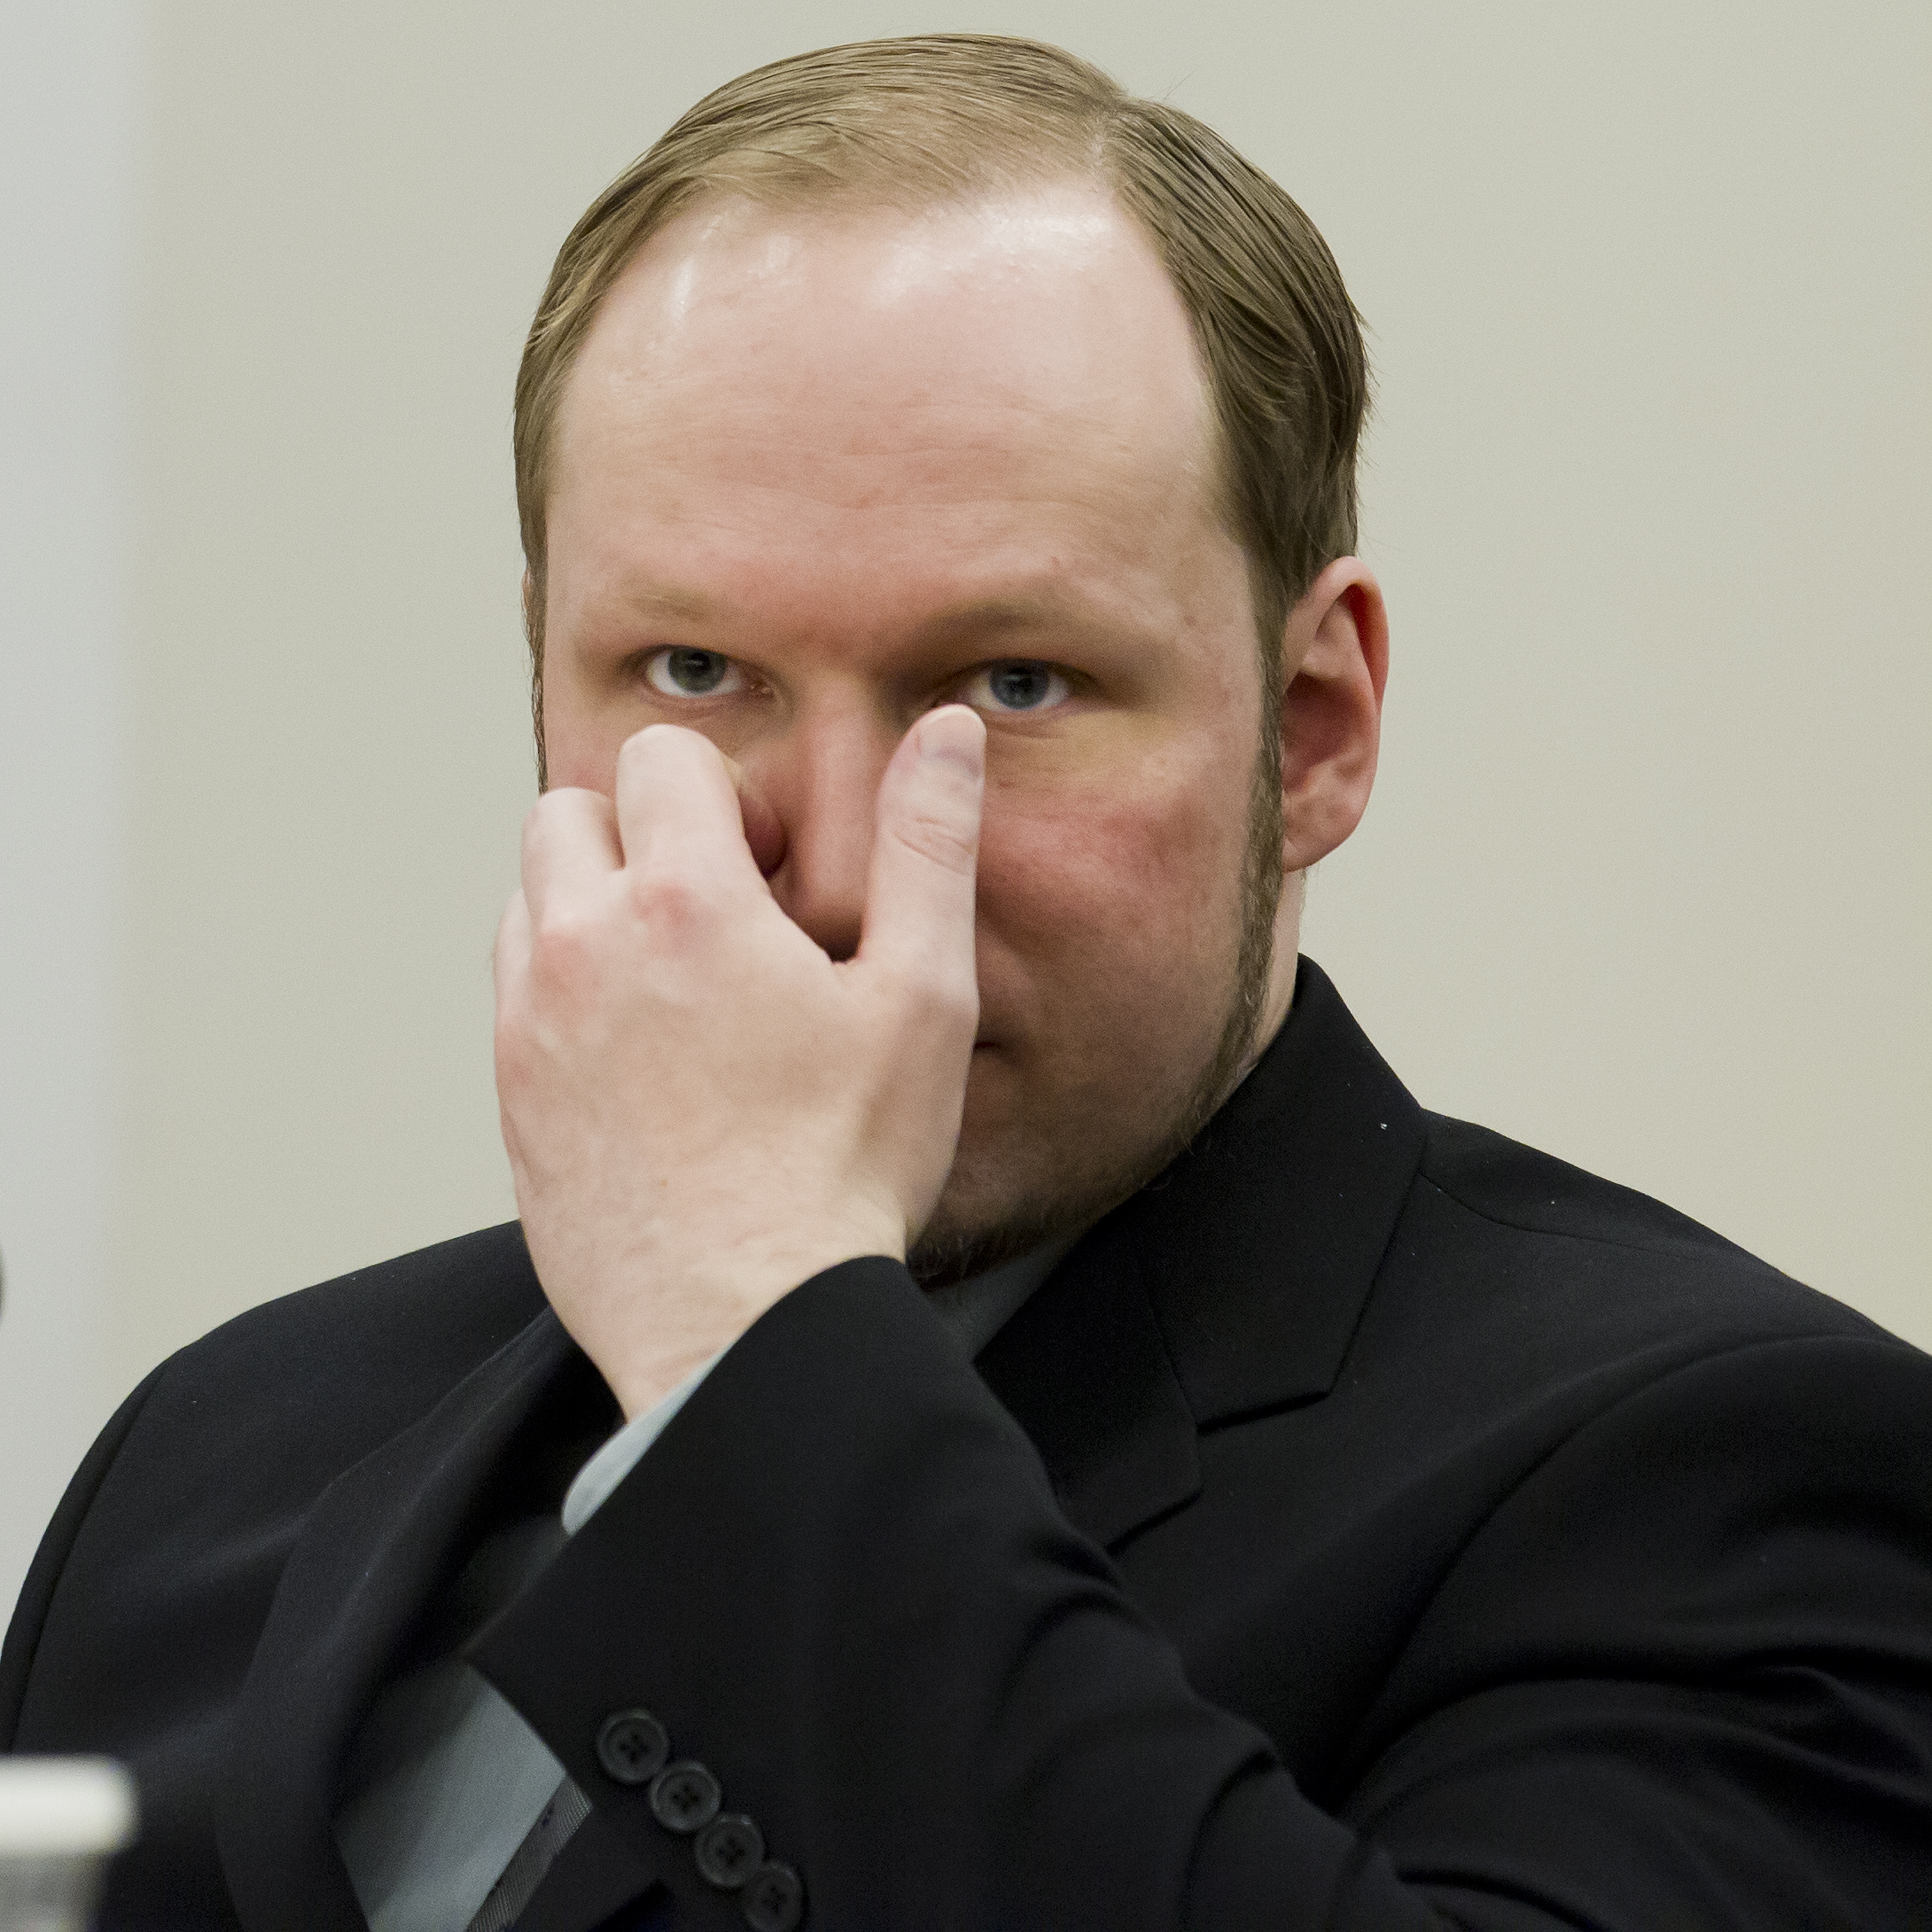 Rättengång, Alpha Kallon, Anders Behring Breivik, Massmördare, Diamanter, Liberia, terrorist